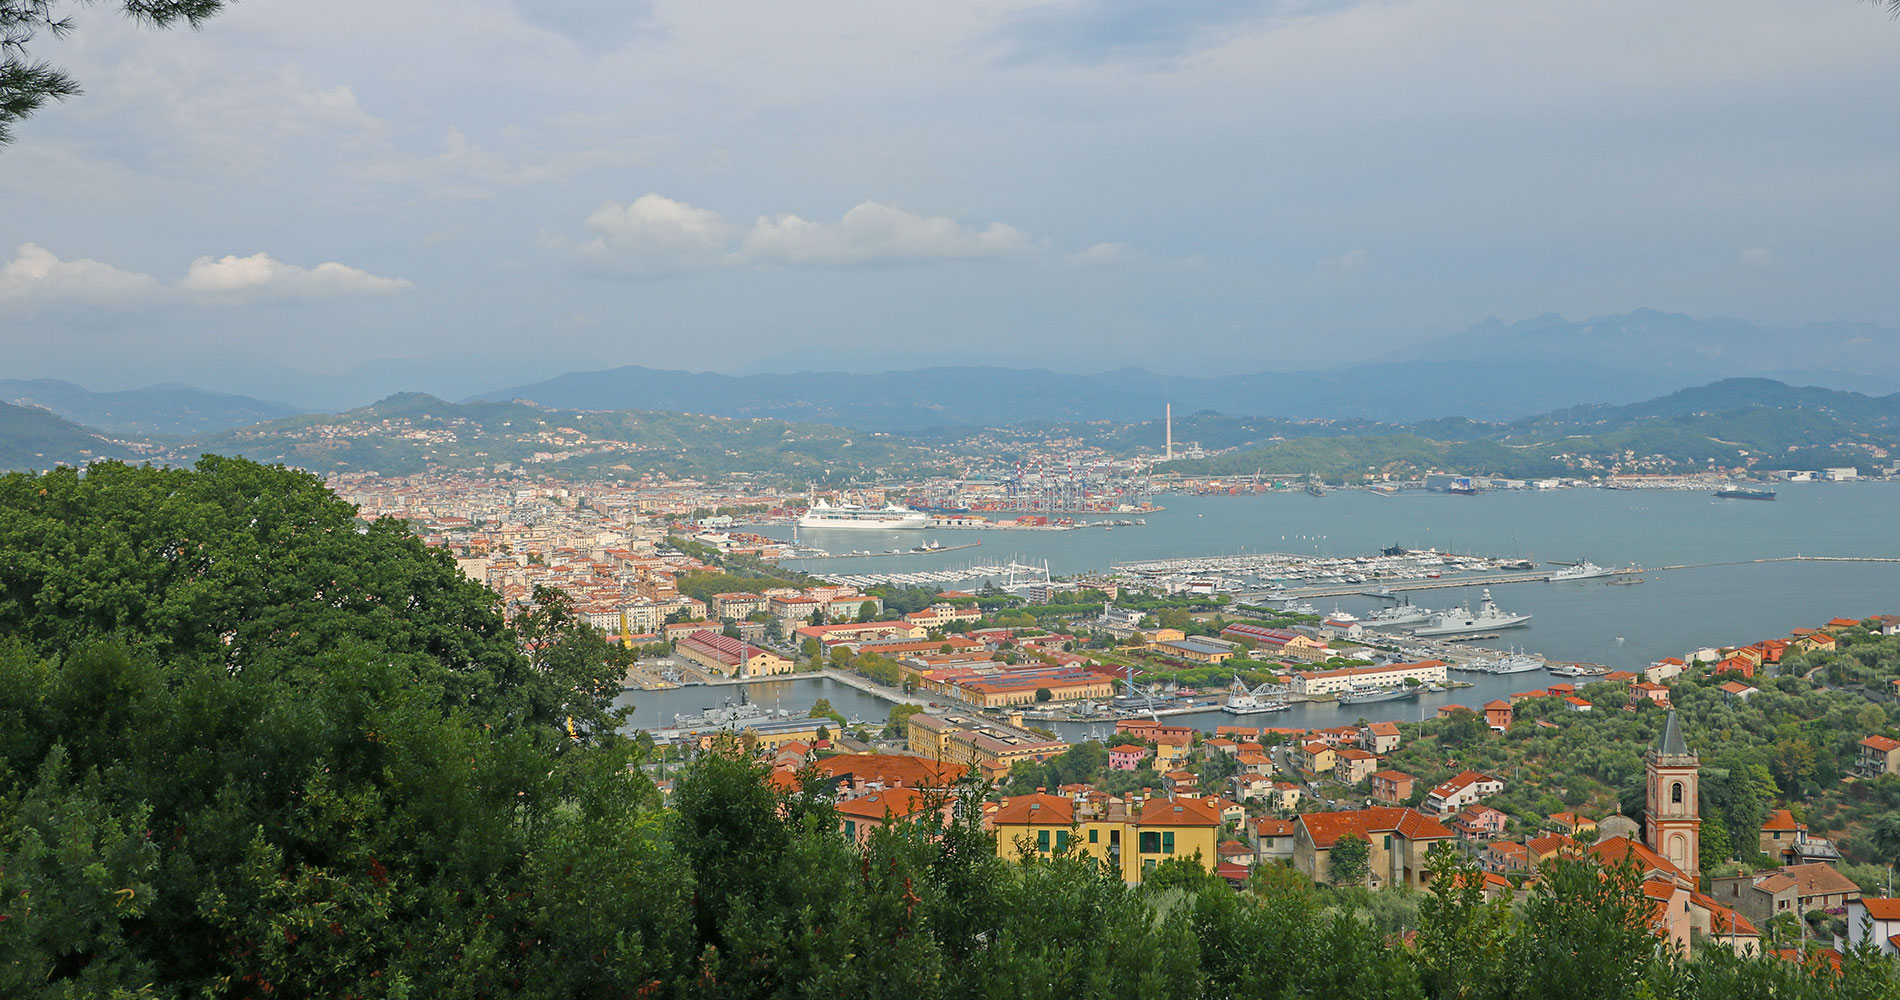 Panoramic view over the city of La Spezia